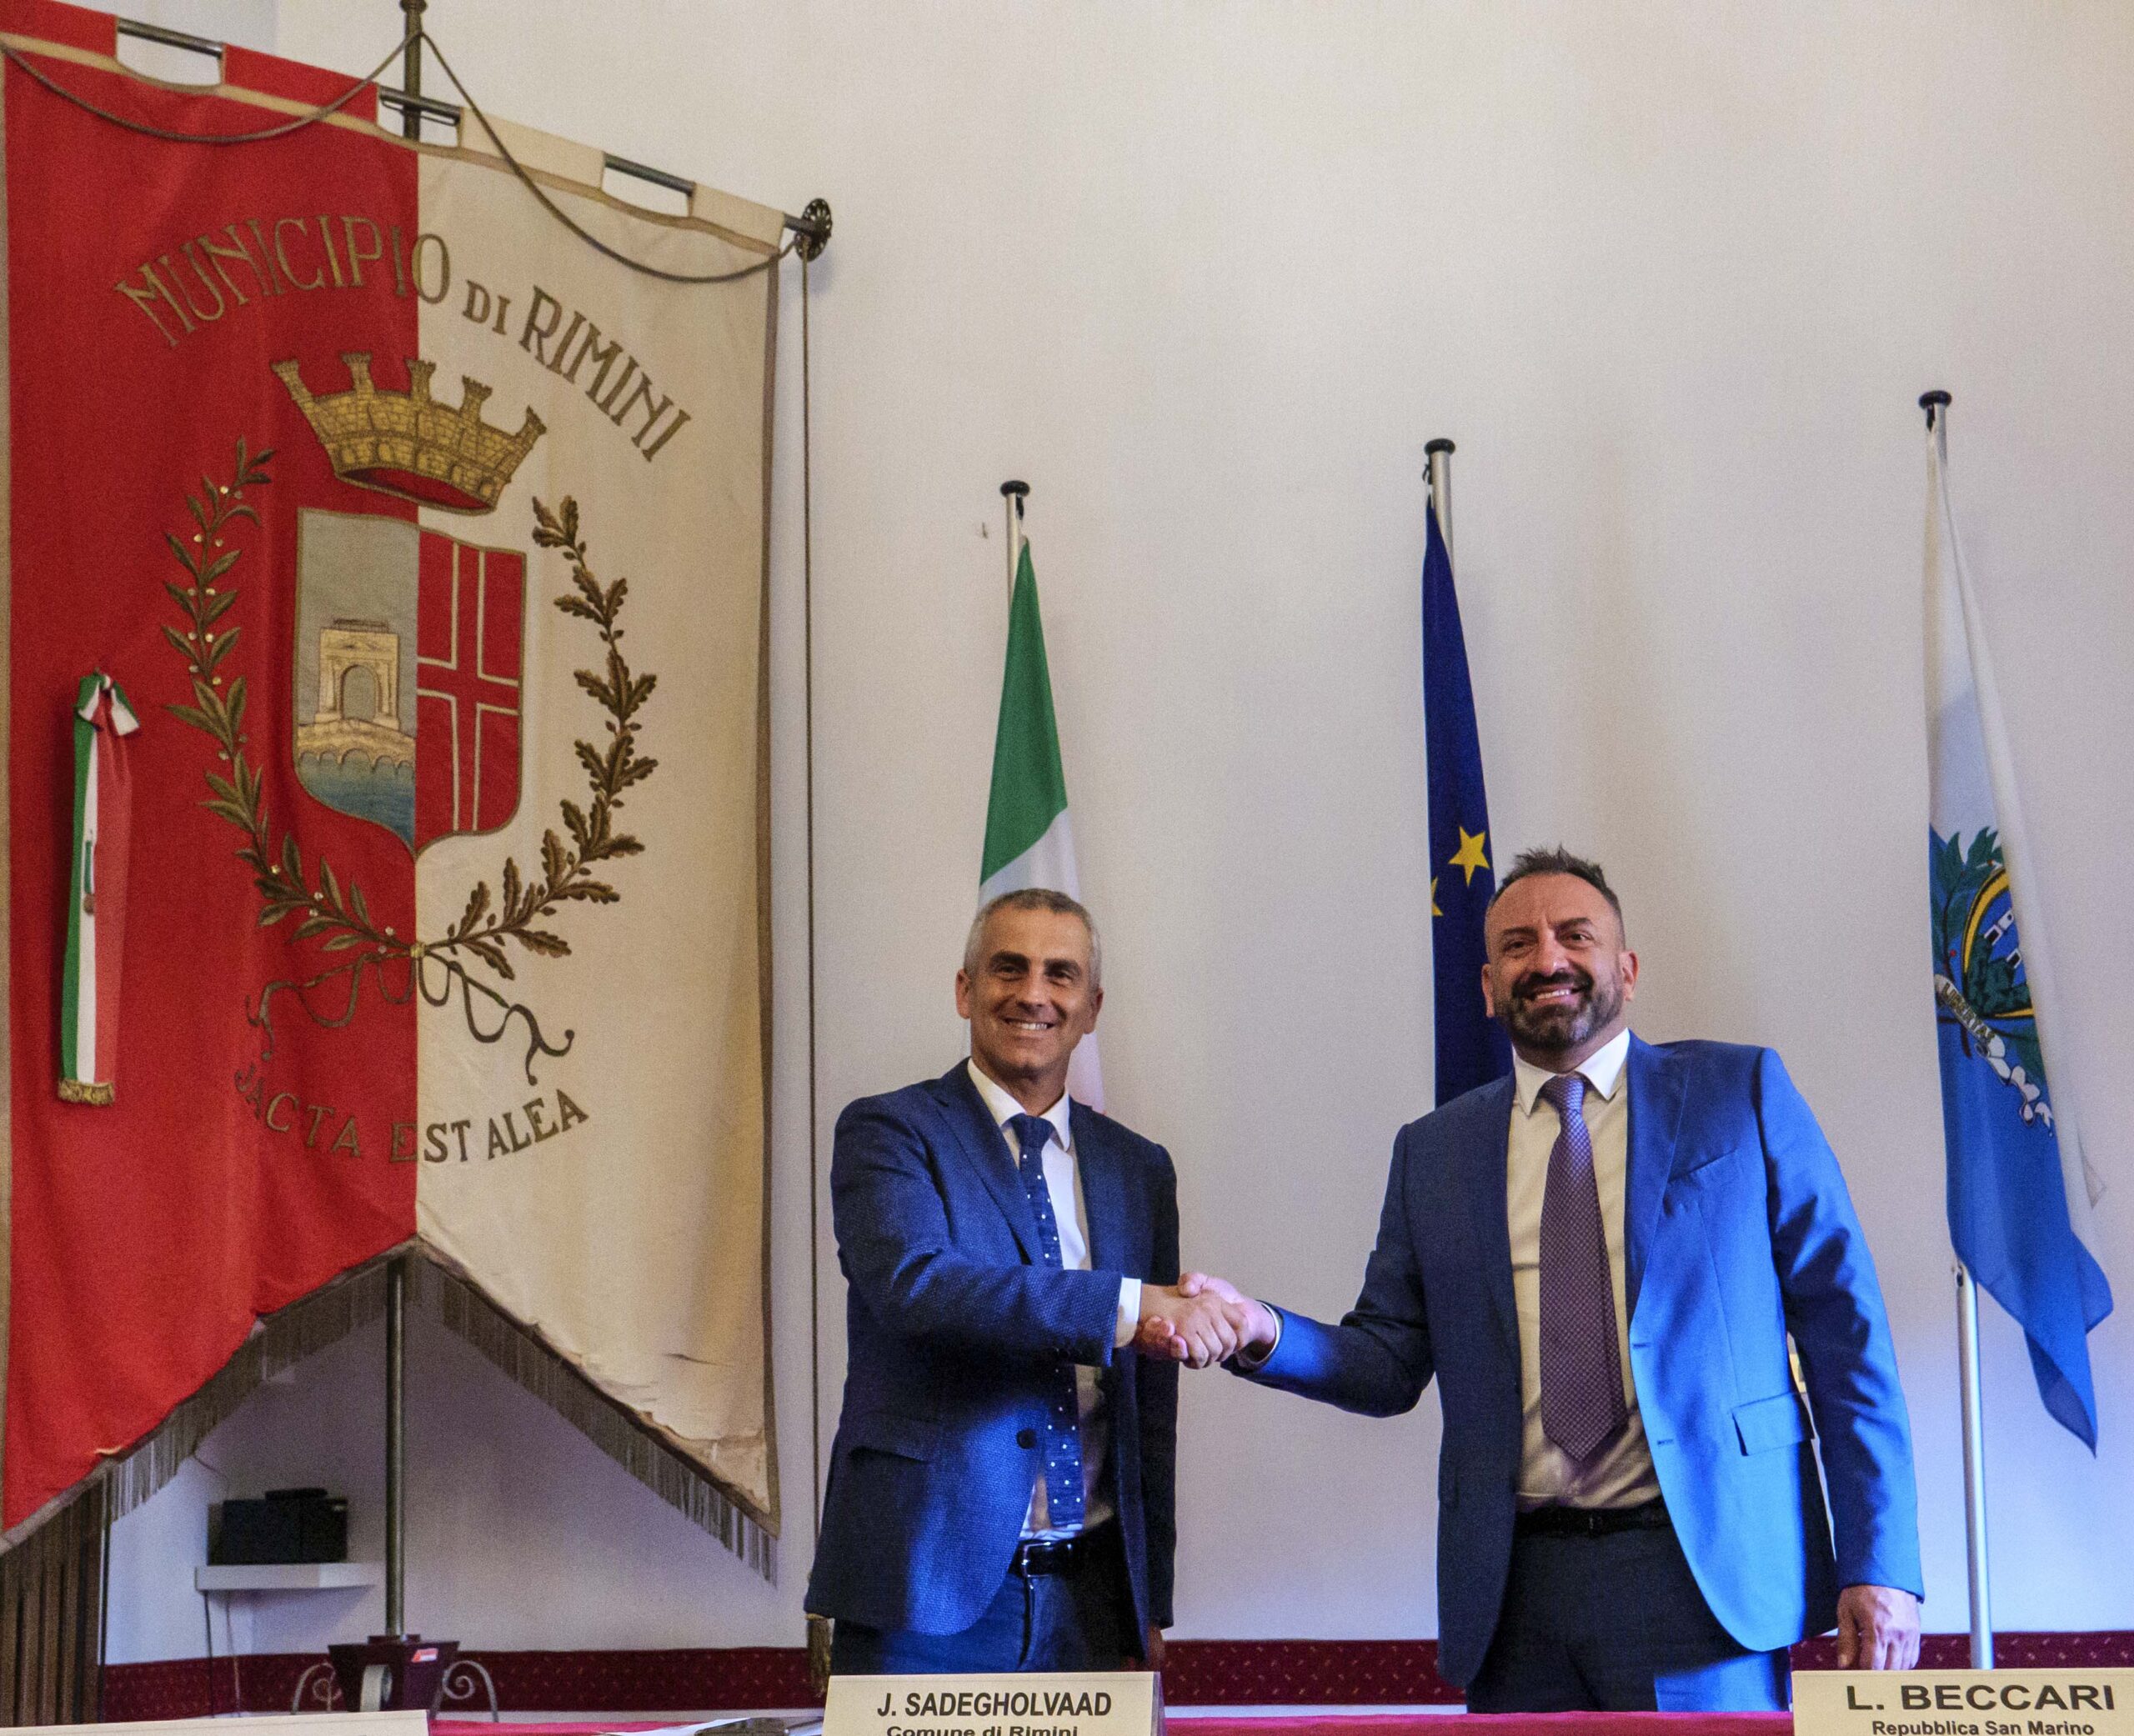 Accordo tra San Marino e la città di Rimini per un piano strategico condiviso